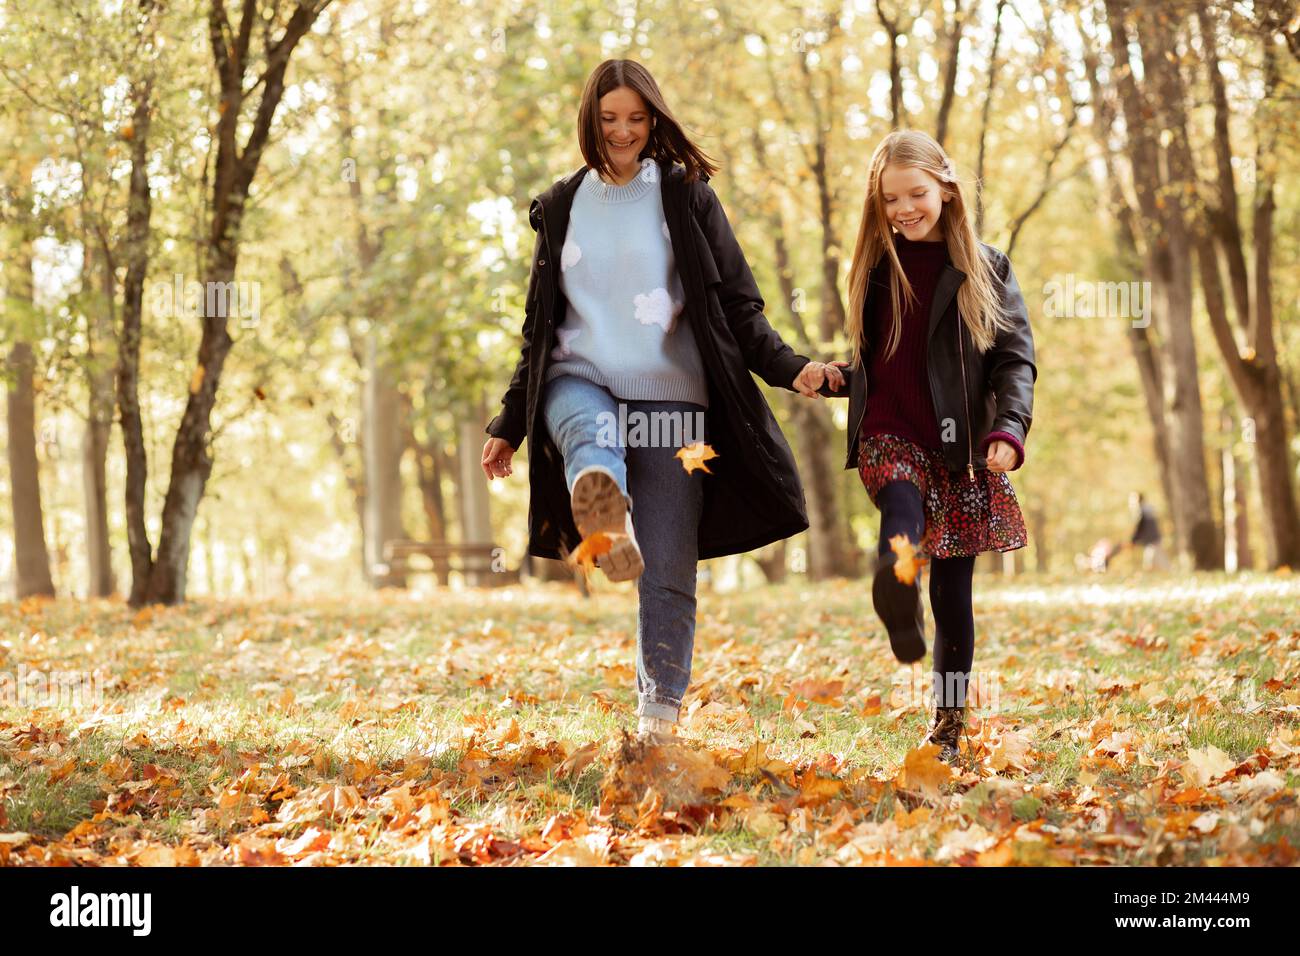 Mischiano, giocoso, felice, sorridente spensierato donna e ragazza giocare e ballare, calci foglie in autunno foresta dorata. Divertendoti Foto Stock